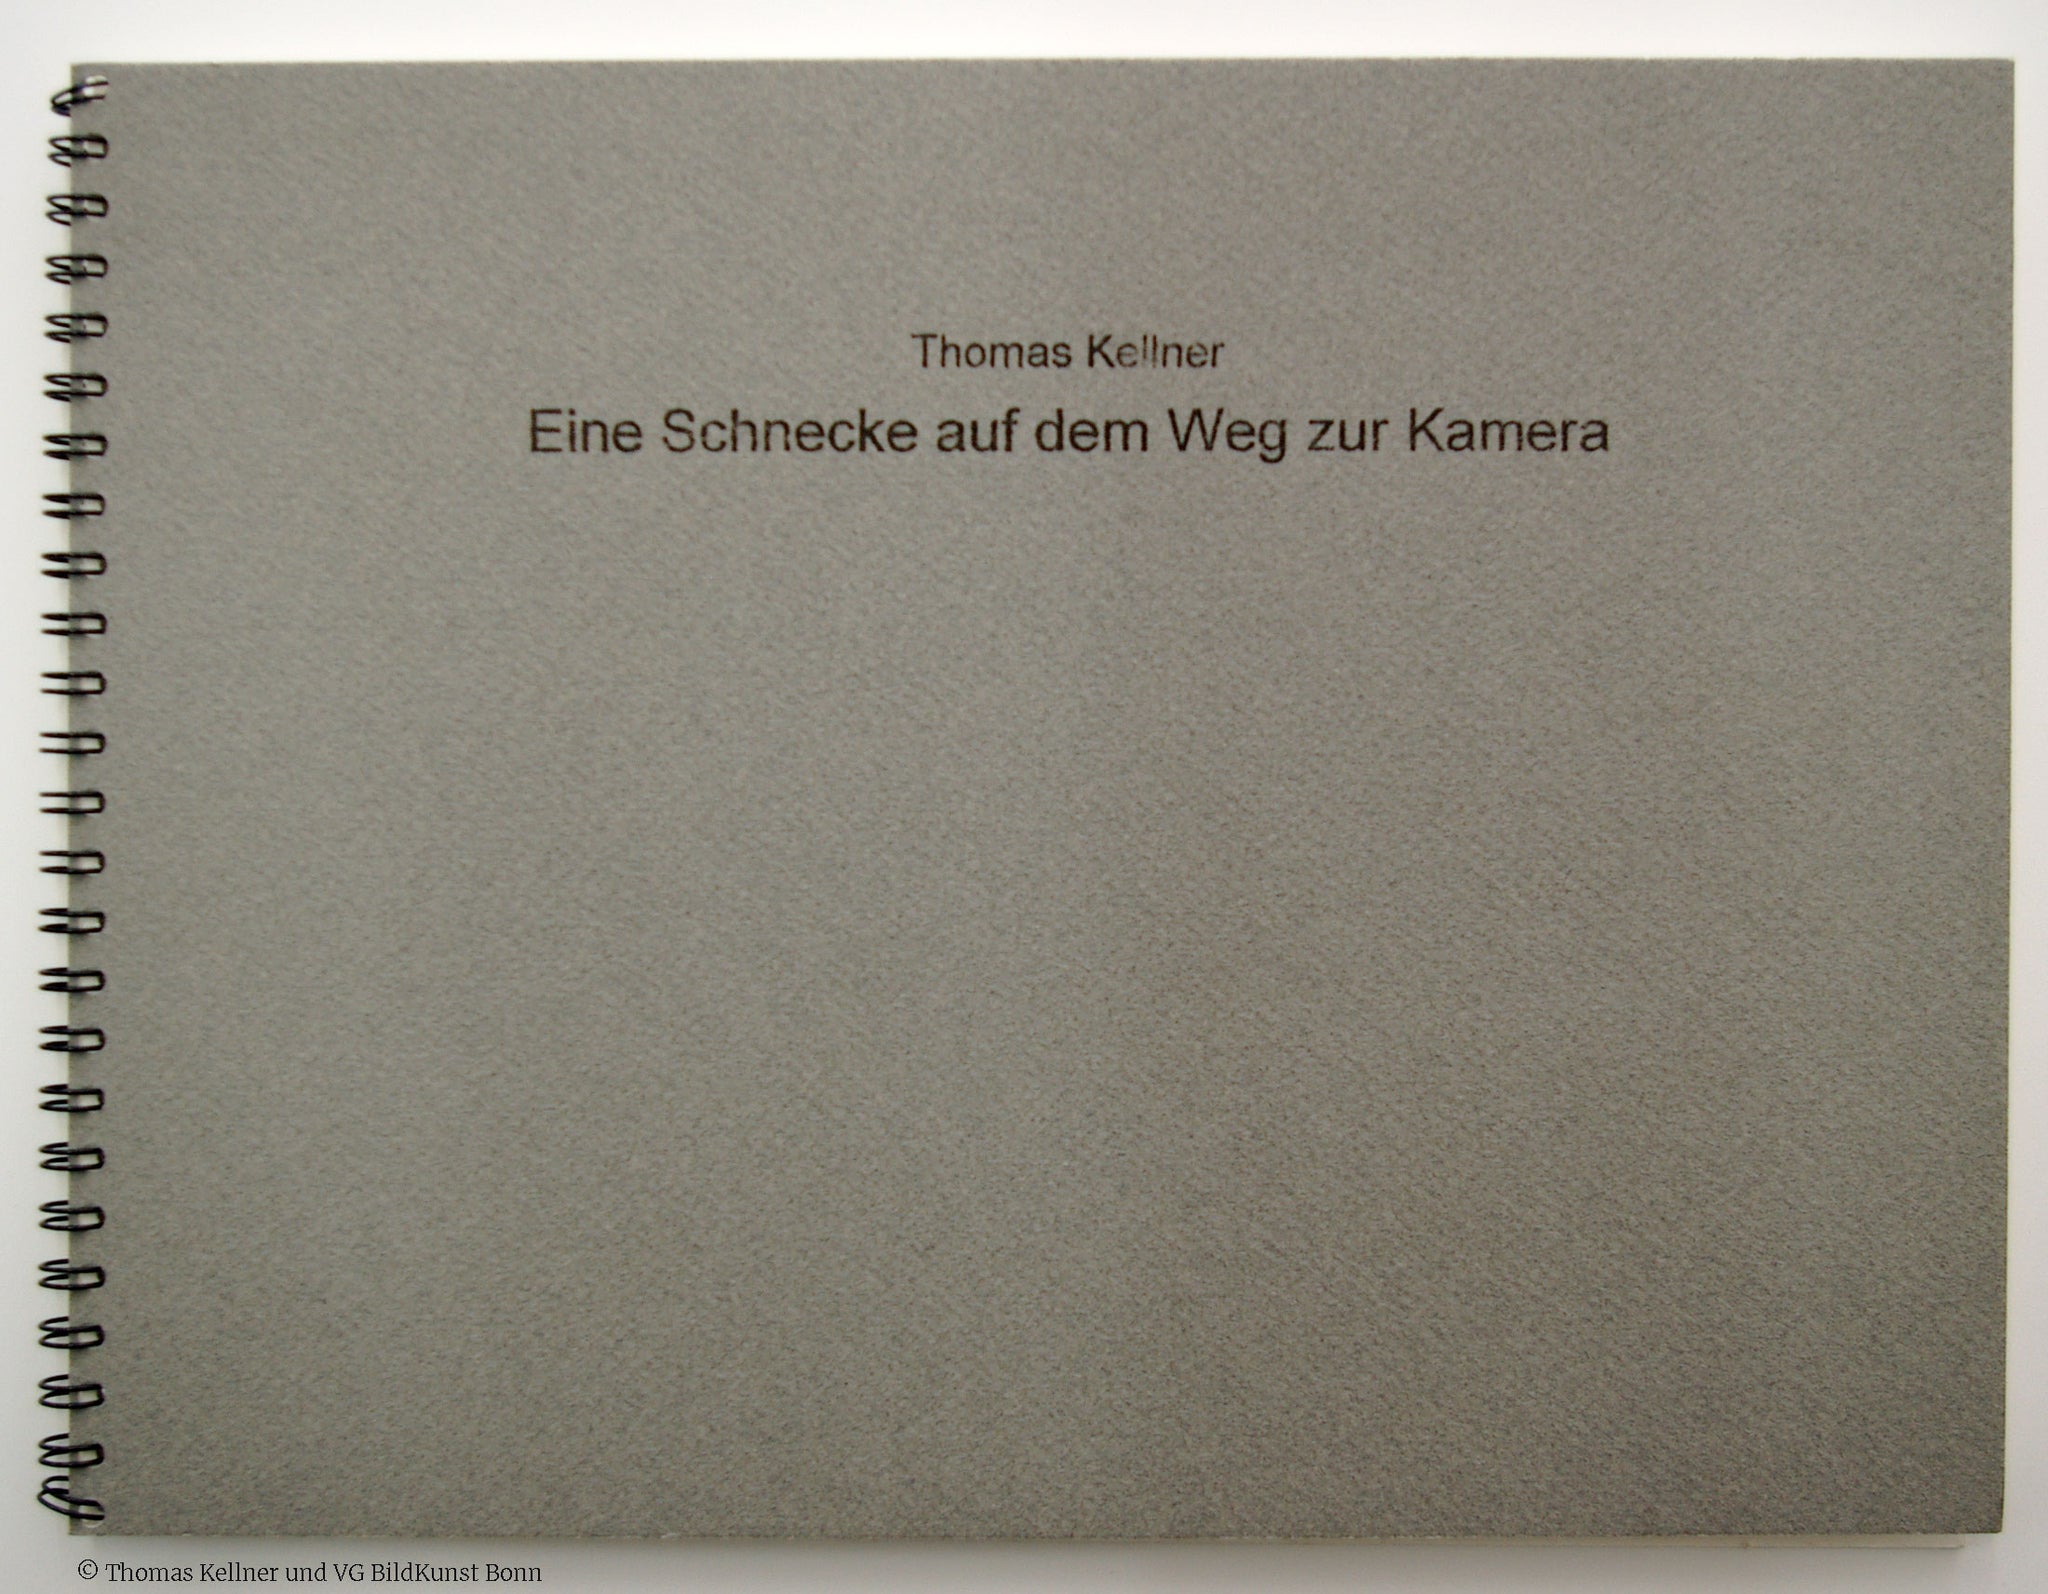 Thomas Kellner – Eine Schnecke auf dem Weg zur Kamera (A snail shell on its way to become a camera) Künstlerbuch mit 11 originalen Fotografien